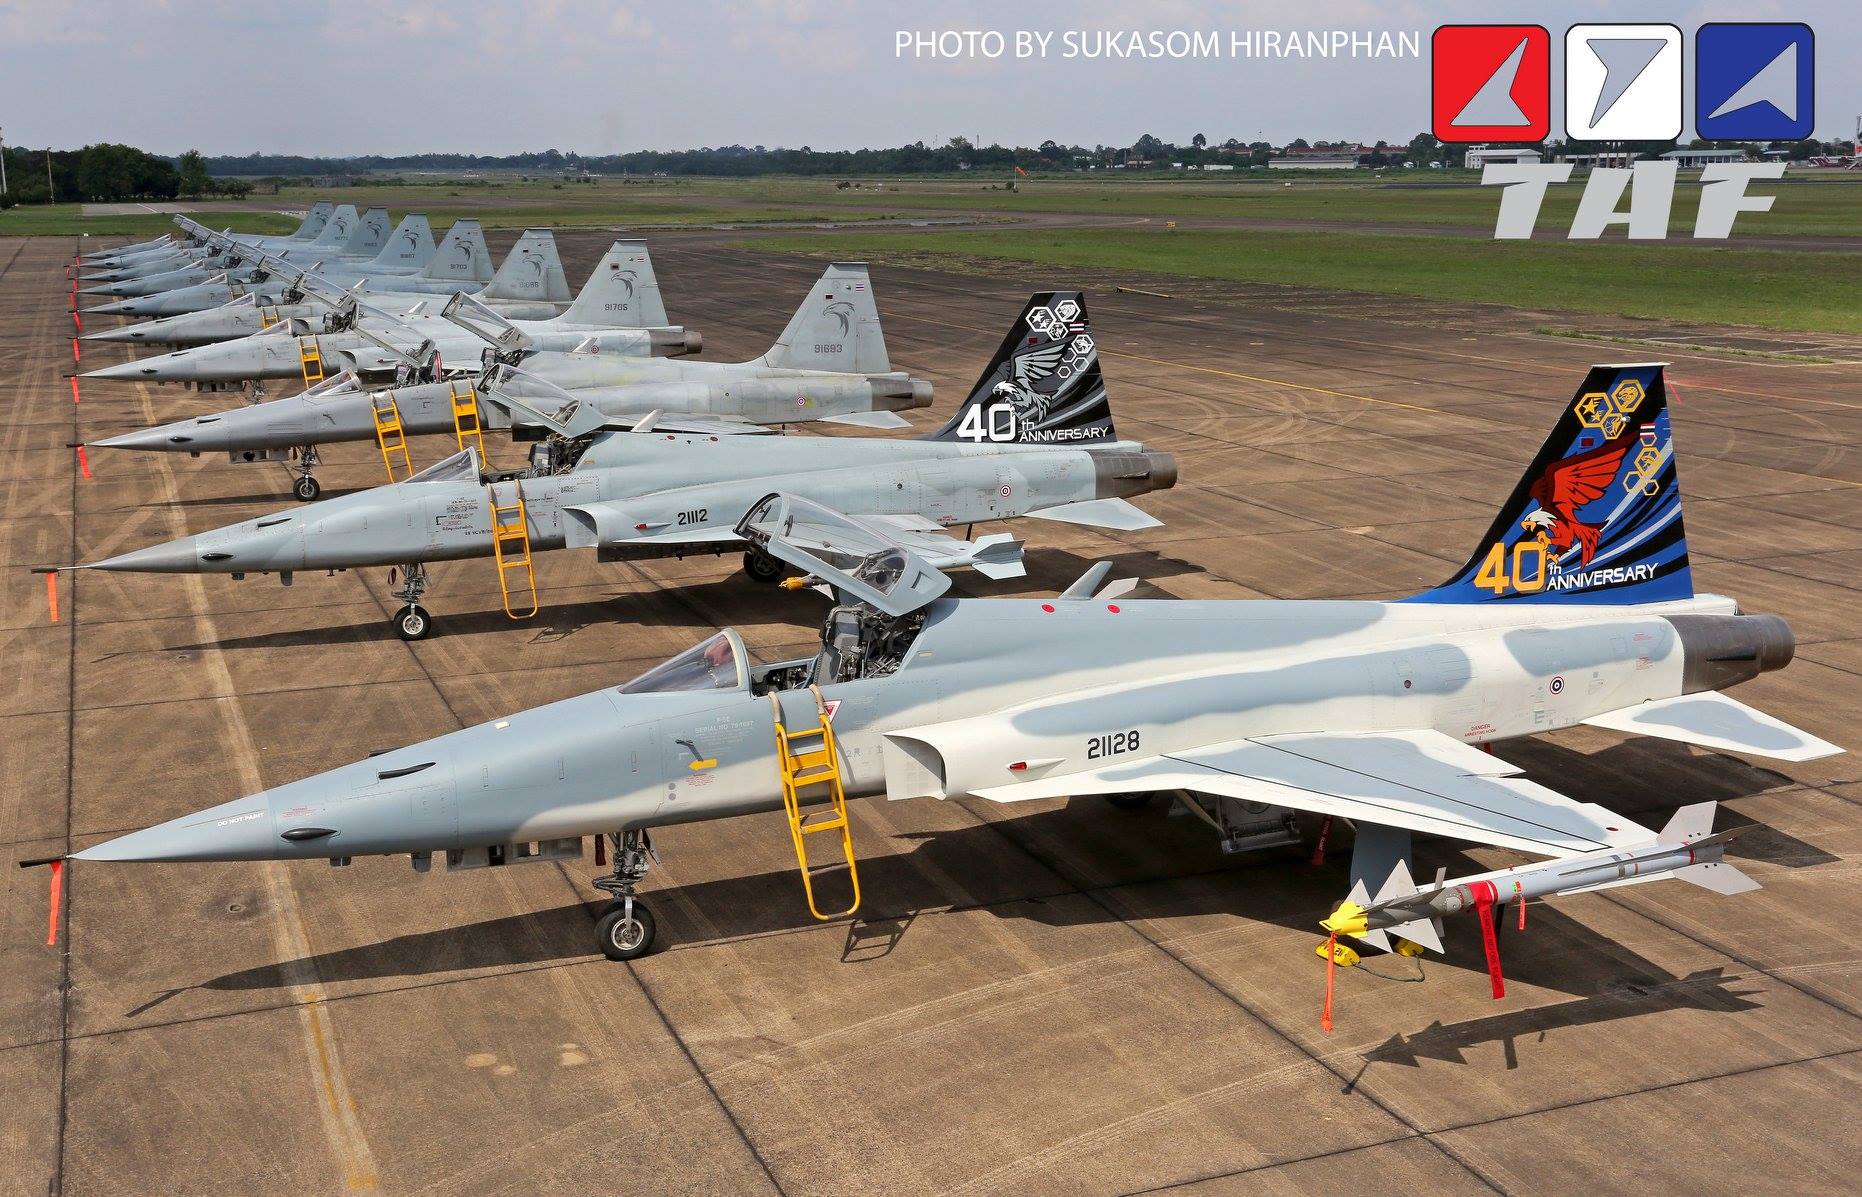 Los F-5E de Tailandia celebraron 40 años de operación en 2018